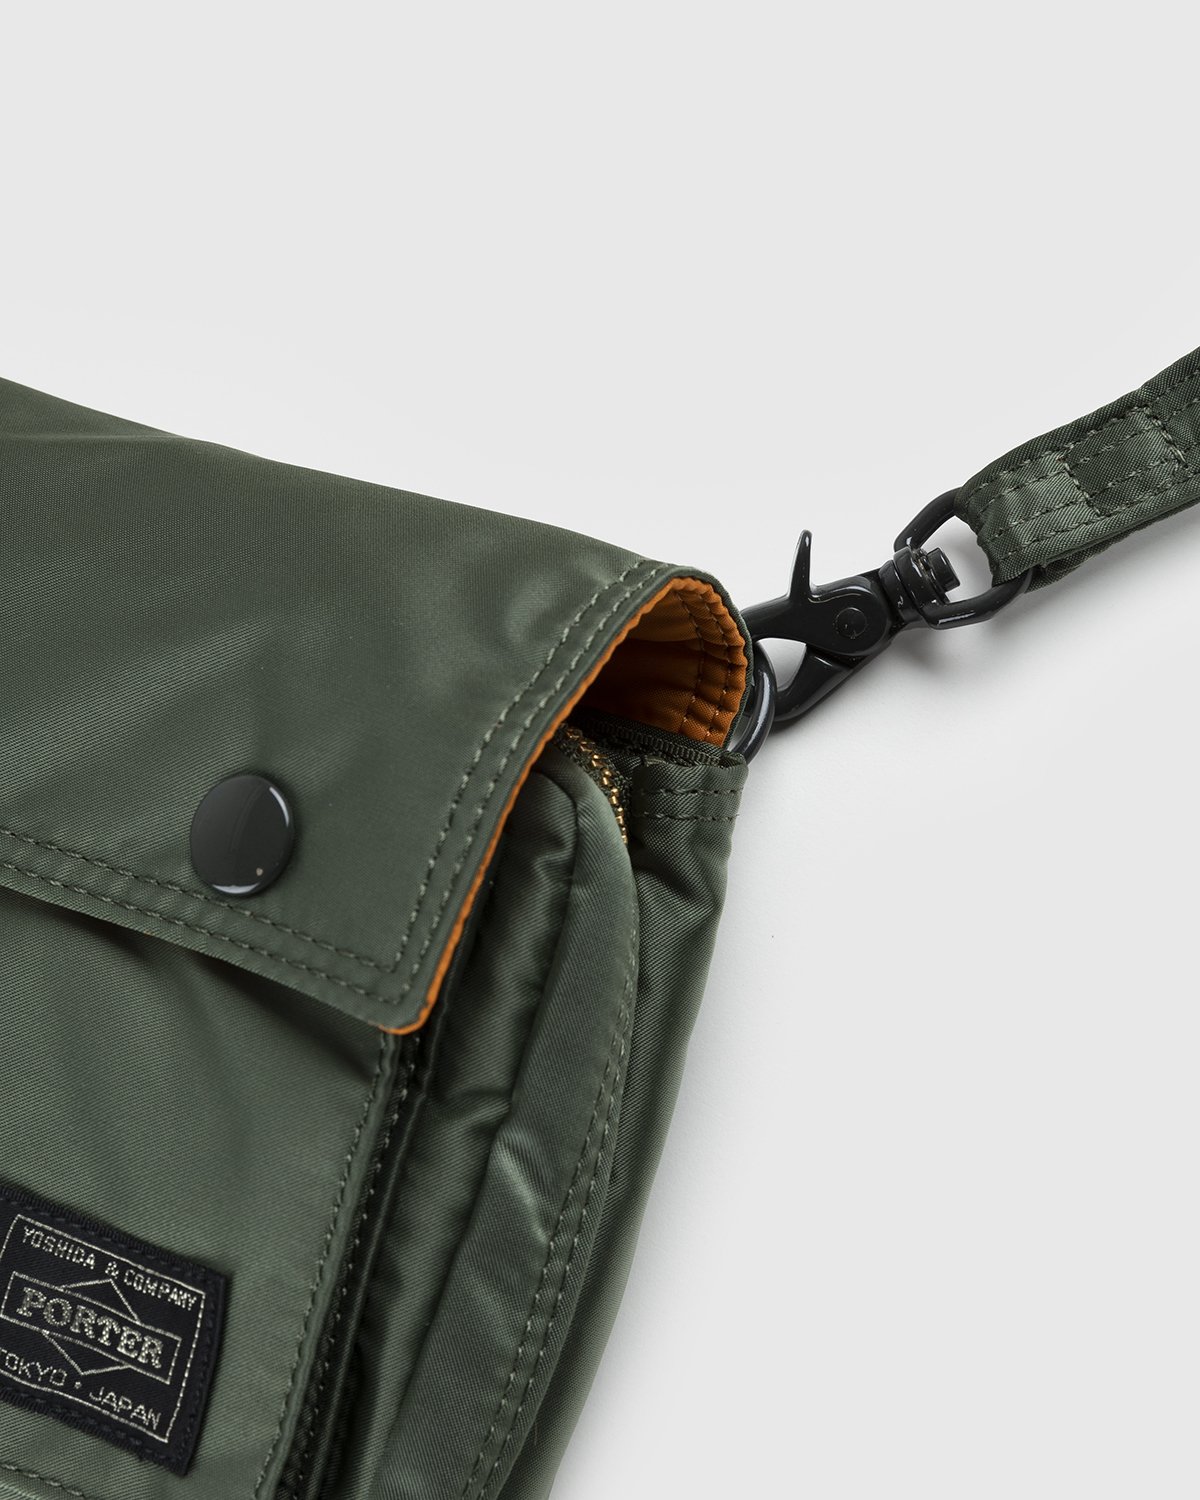 Porter-Yoshida & Co. - Tanker Clip Shoulder Bag Sage Green - Accessories - Green - Image 4